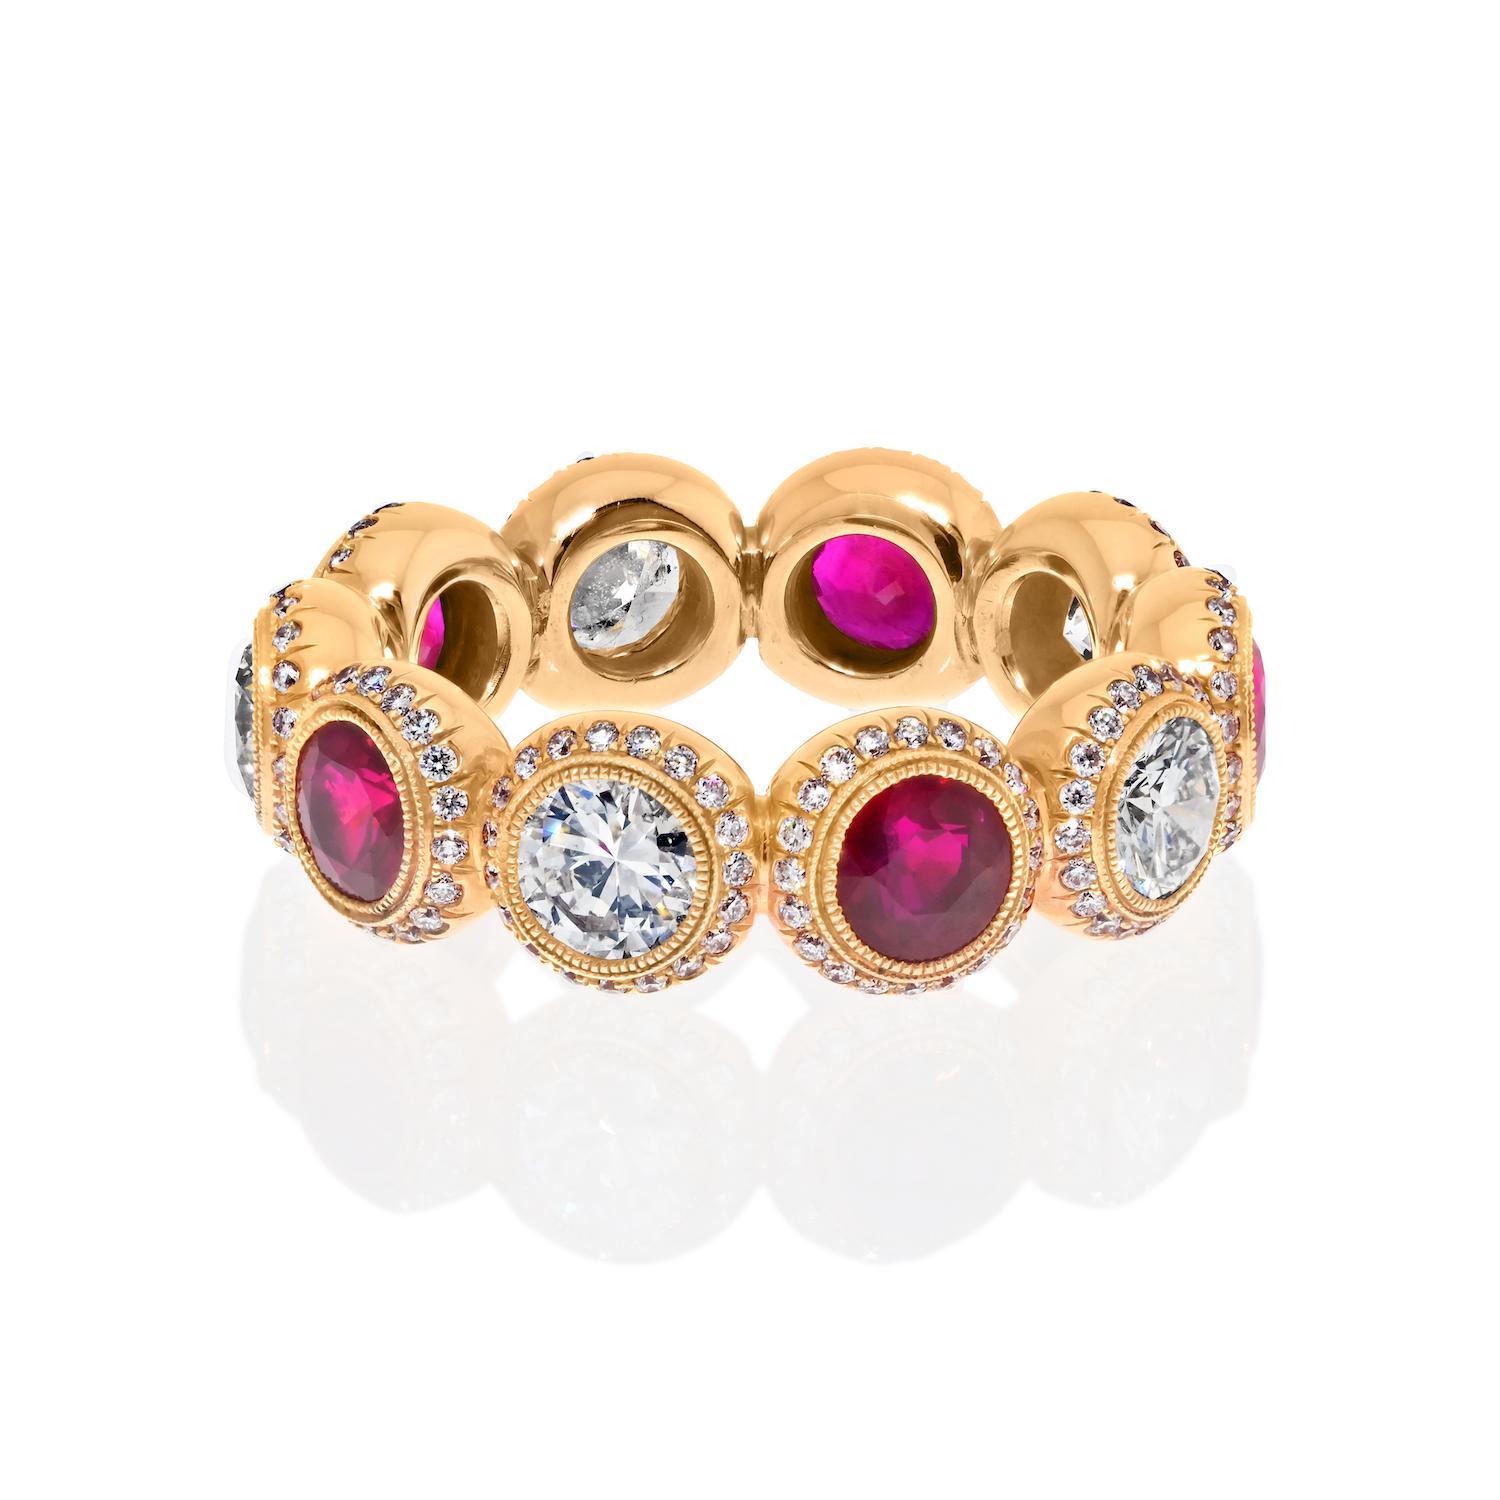 Voici notre superbe bracelet d'éternité en rubis et diamants, fabriqué à la main en or 18 carats avec un souci du détail inégalé. Cette bague à couper le souffle est fabriquée en or jaune 18 carats et présente une combinaison fascinante de rubis et